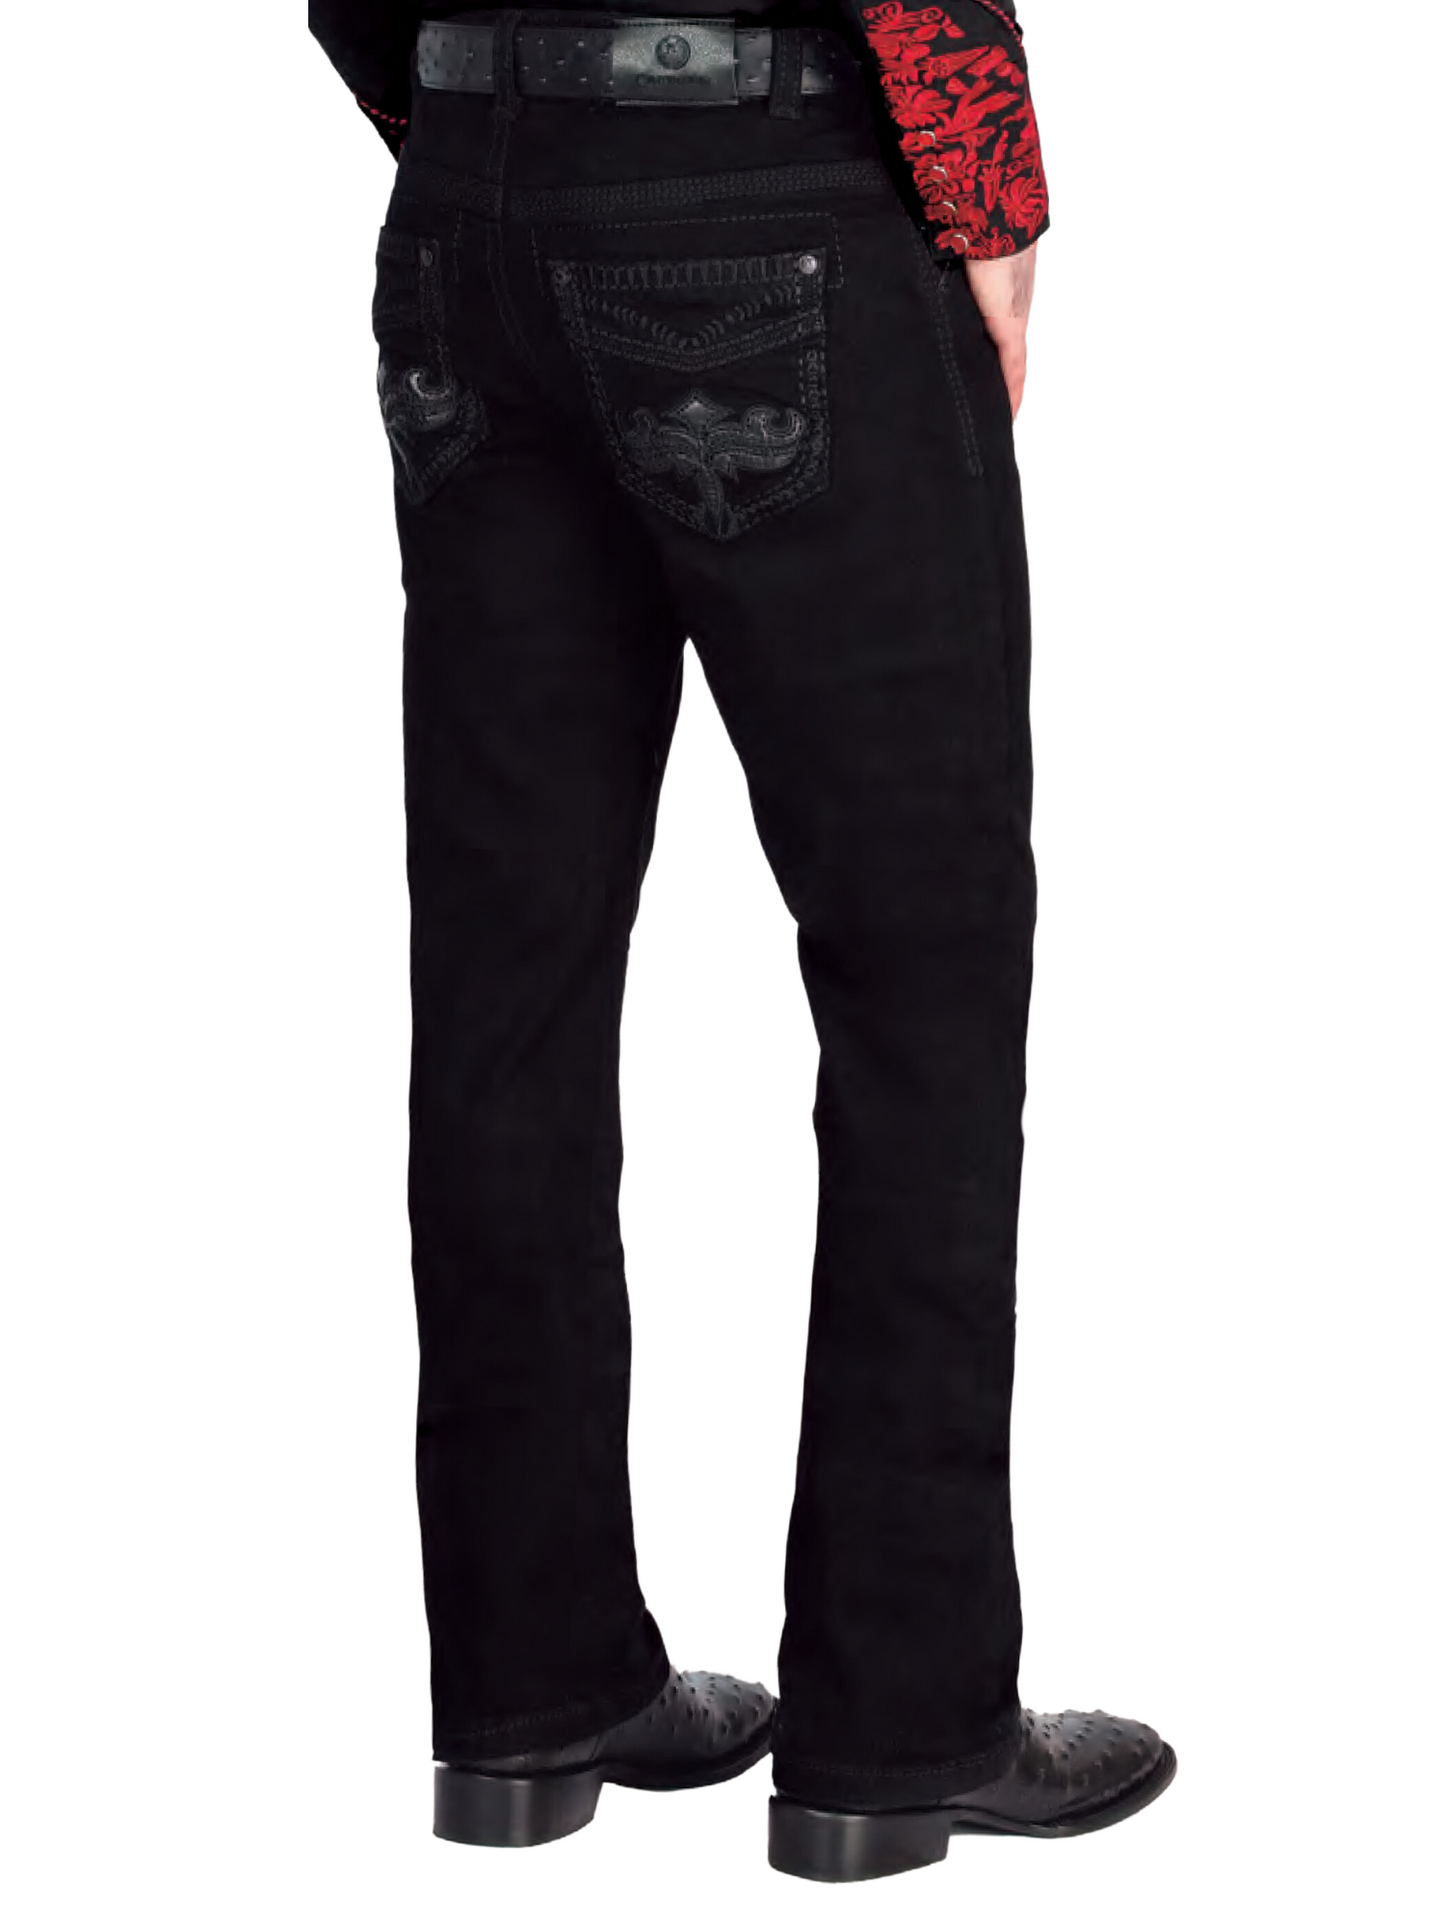 Black Boot Cut Denim Jeans for Men 'Centenario' - ID: 44831 Denim Jeans Centenario